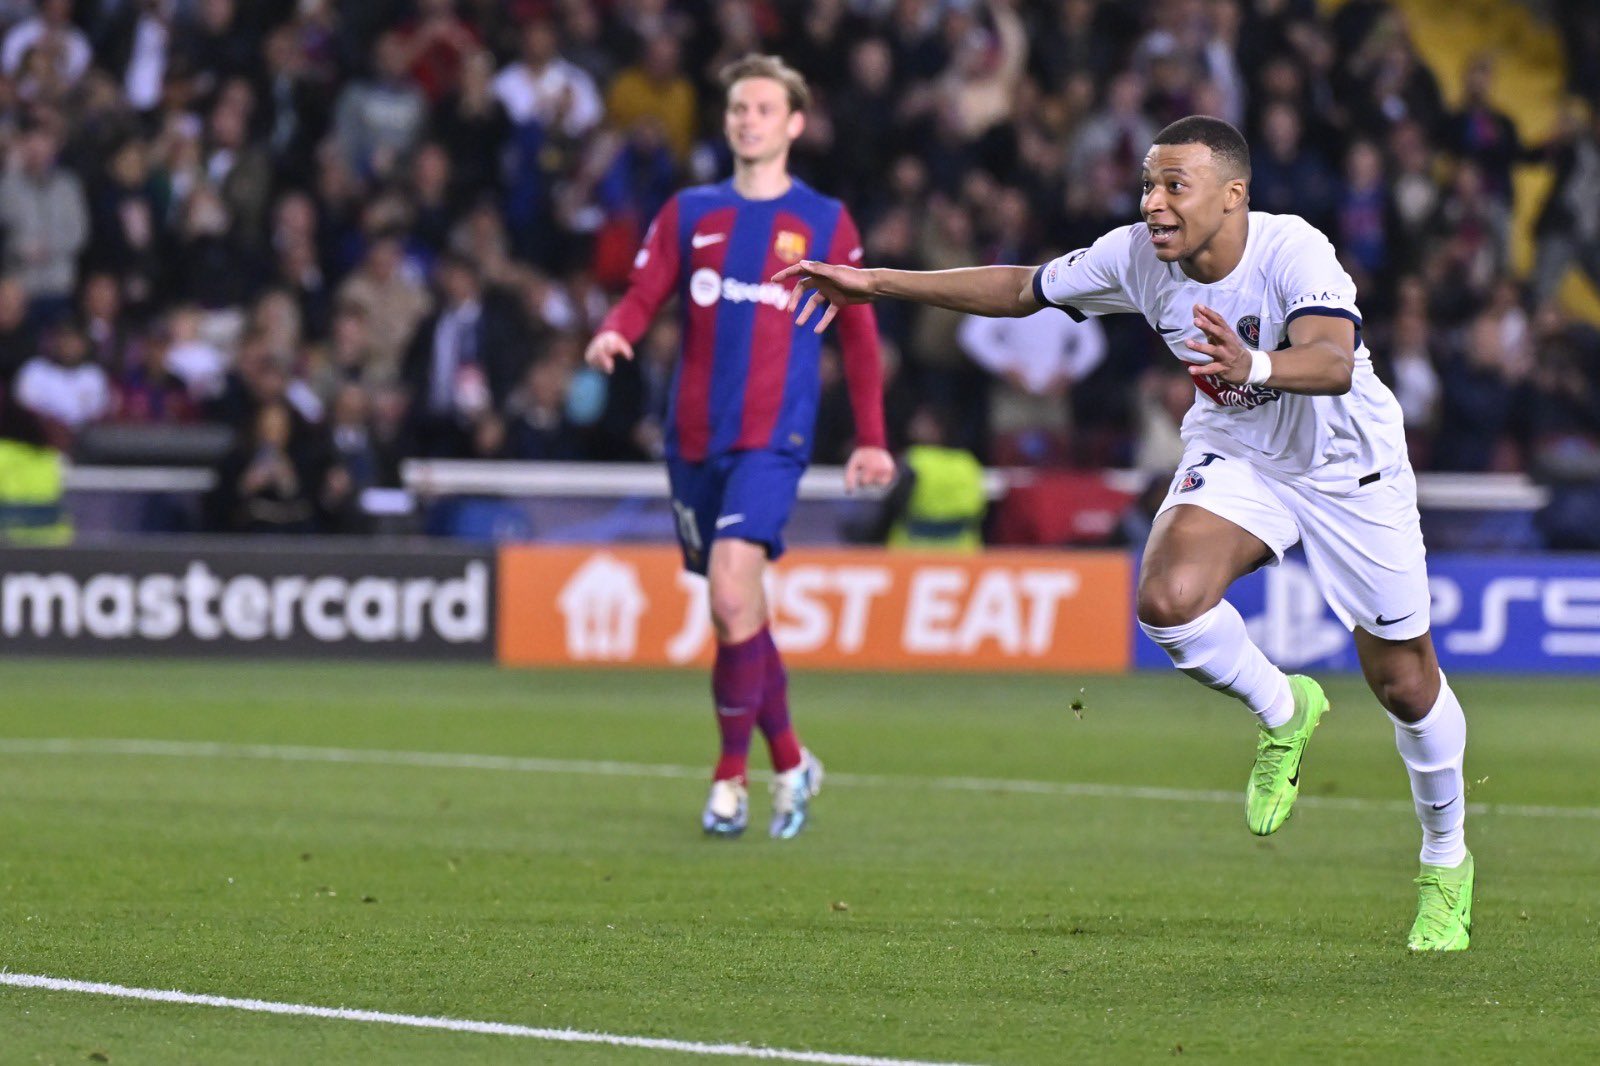 باريس سان جيرمان يتأهل إلى نصف نهائي دوري أبطال أوروبا بعد سحق برشلونة برباعية